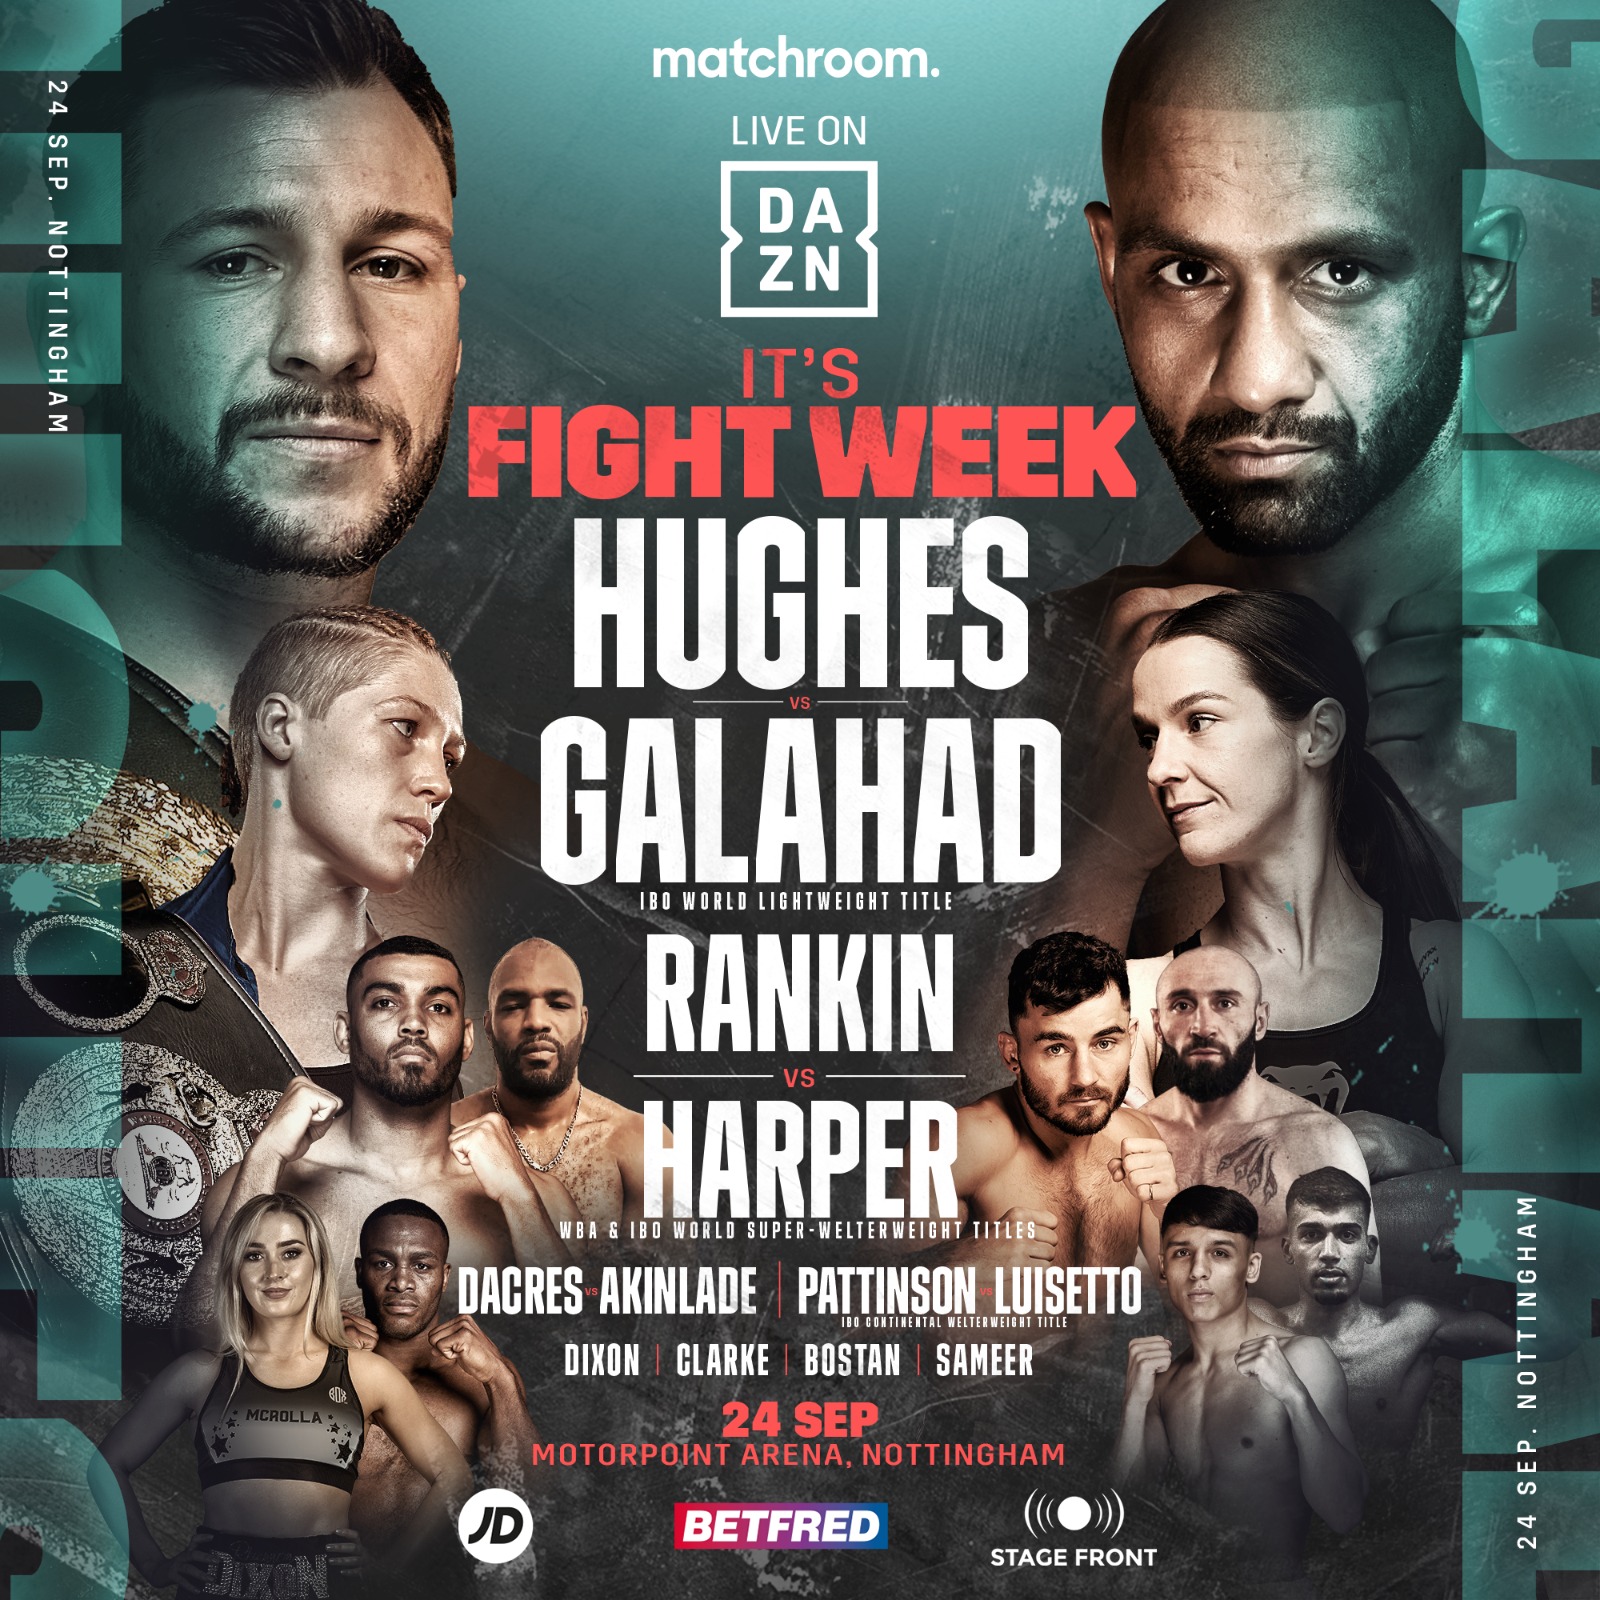 Hughes vs Galahad - Rankin vsHarper